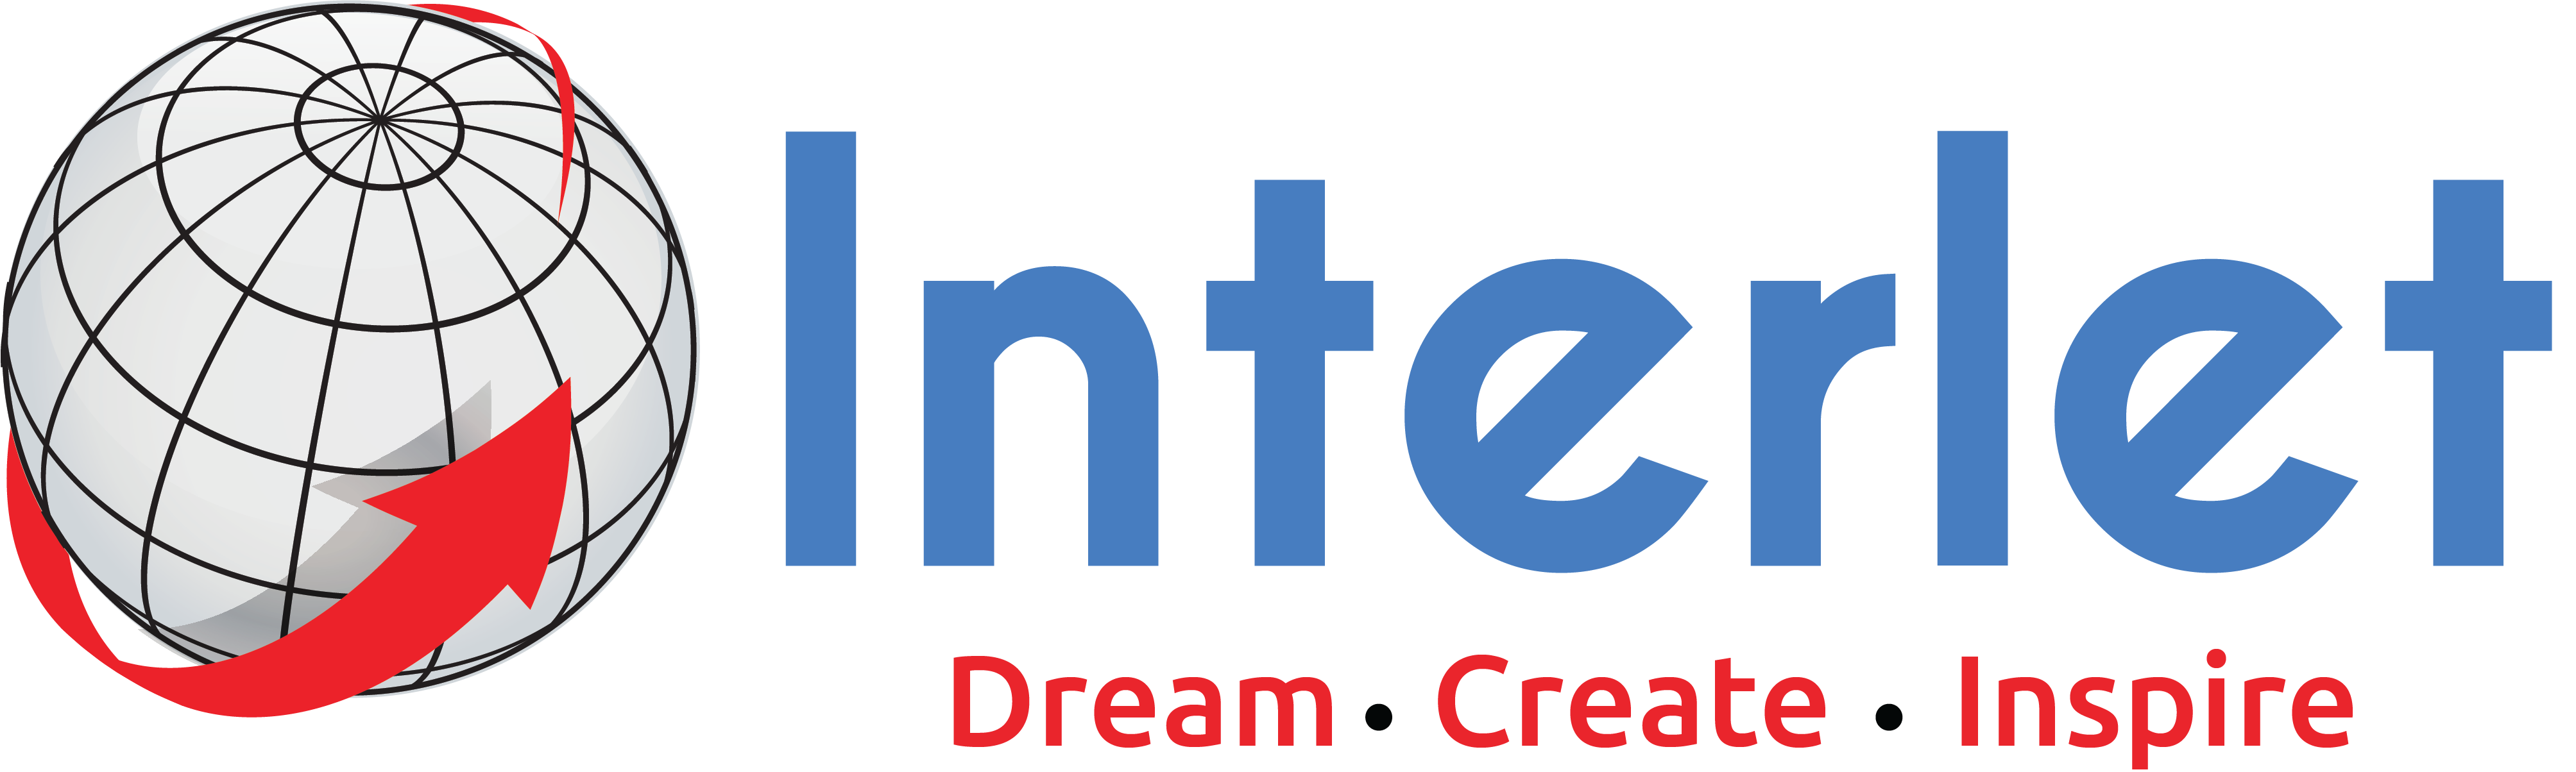 Interlet Limited